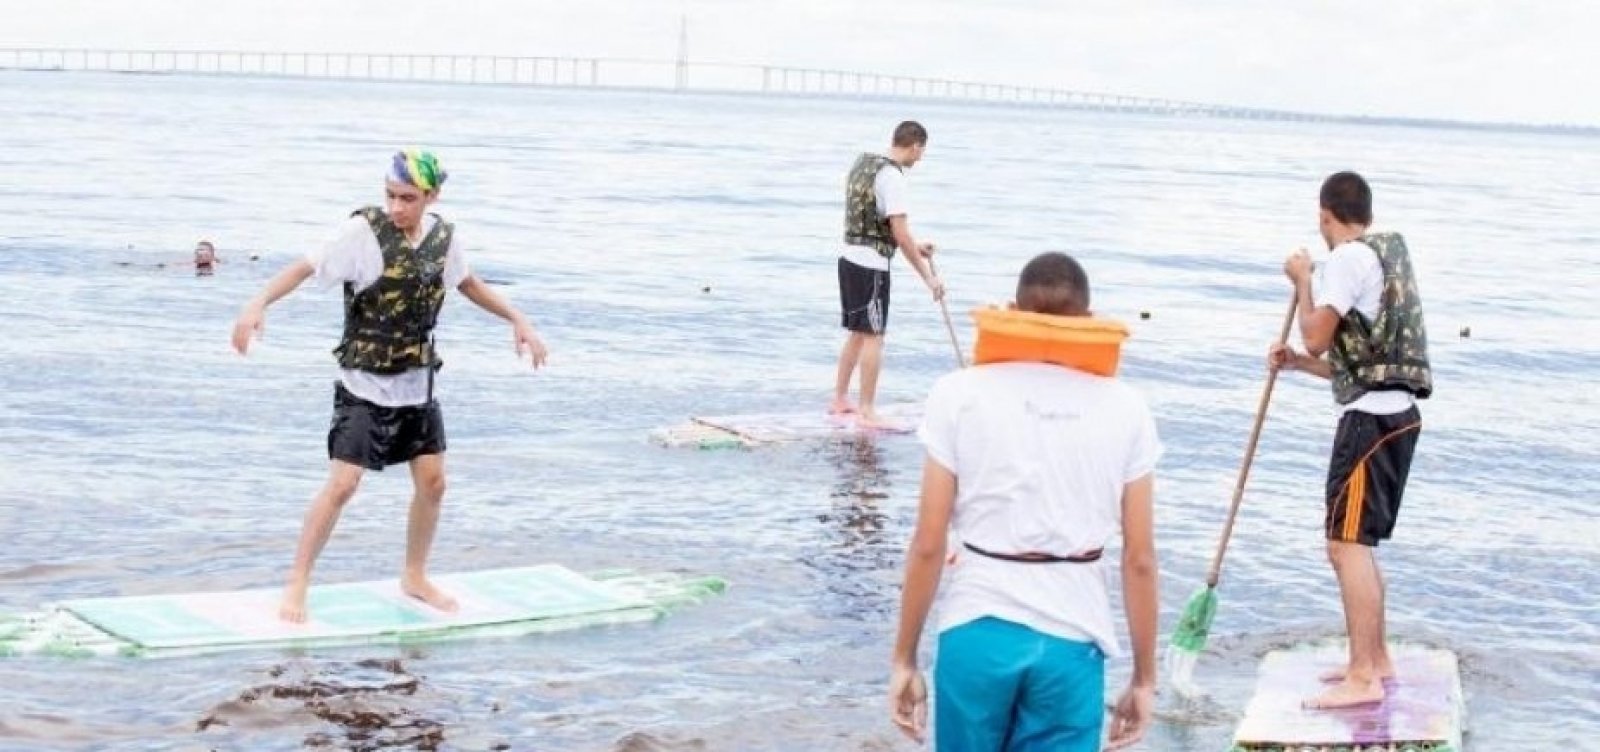 Após sumiço de praticantes de stand up paddle, Tinoco quer regulamentação da atividade